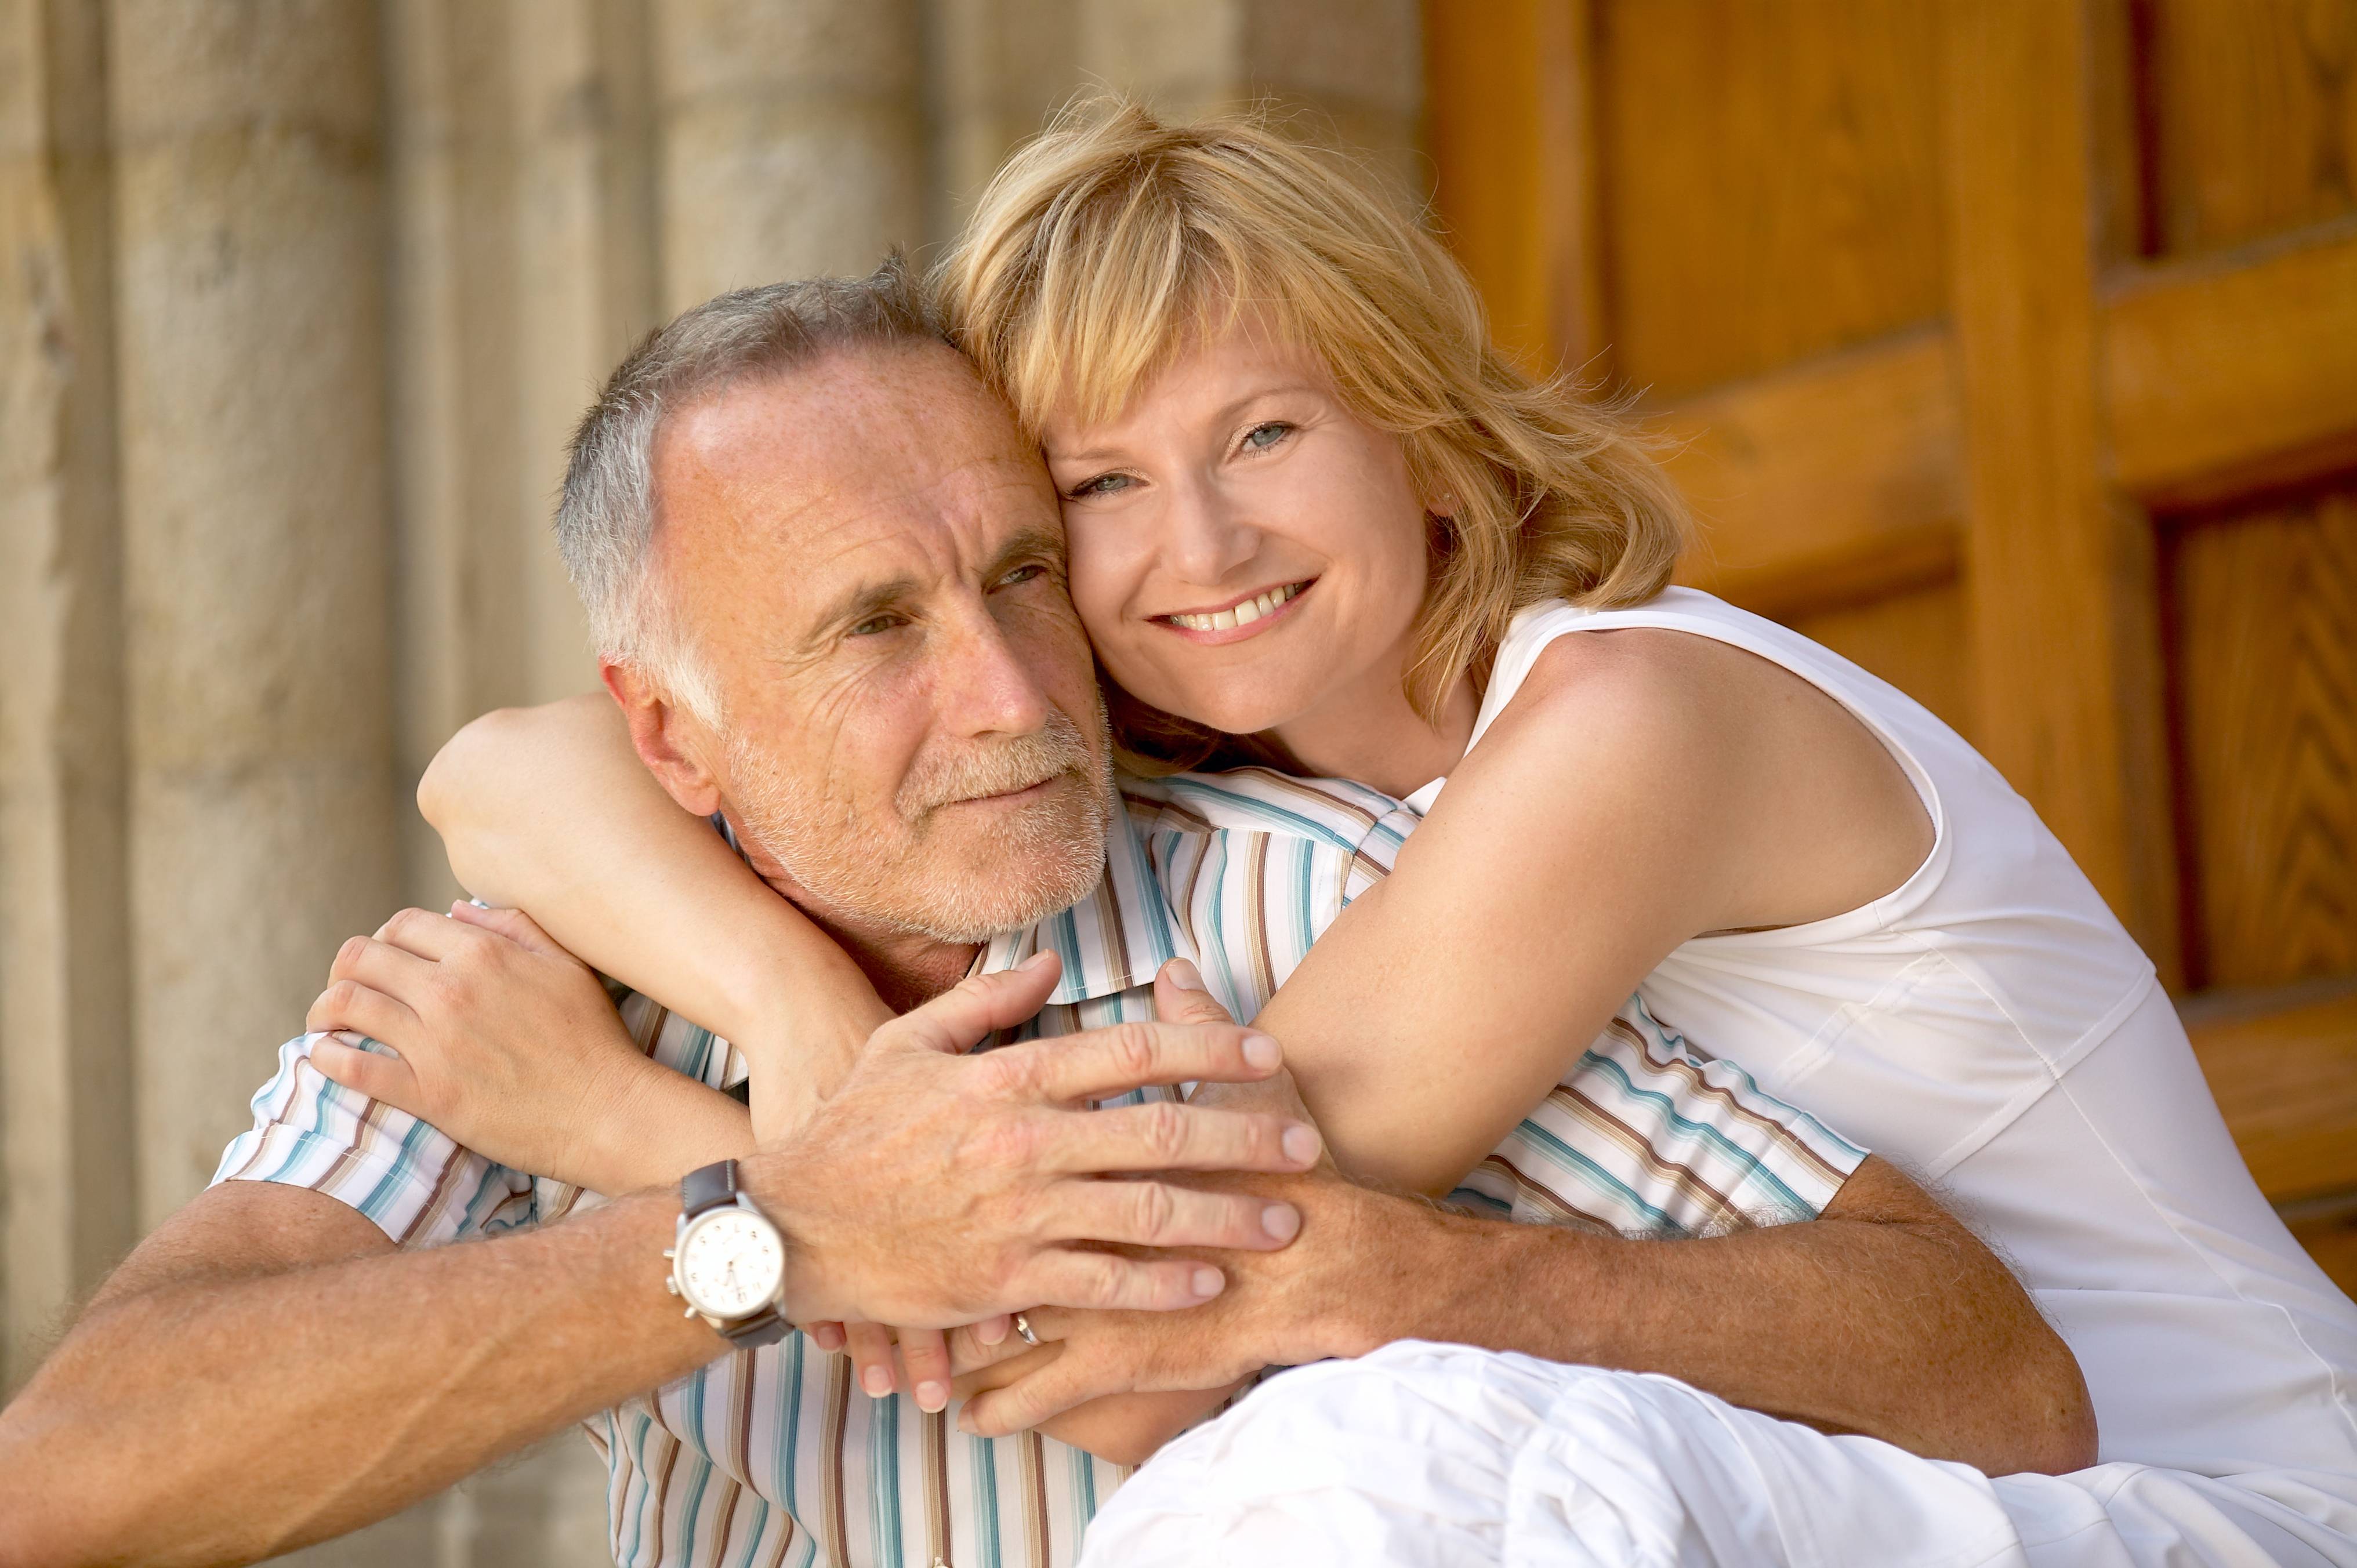 Женщина старше мужчины: психология отношений при разнице в возрасте